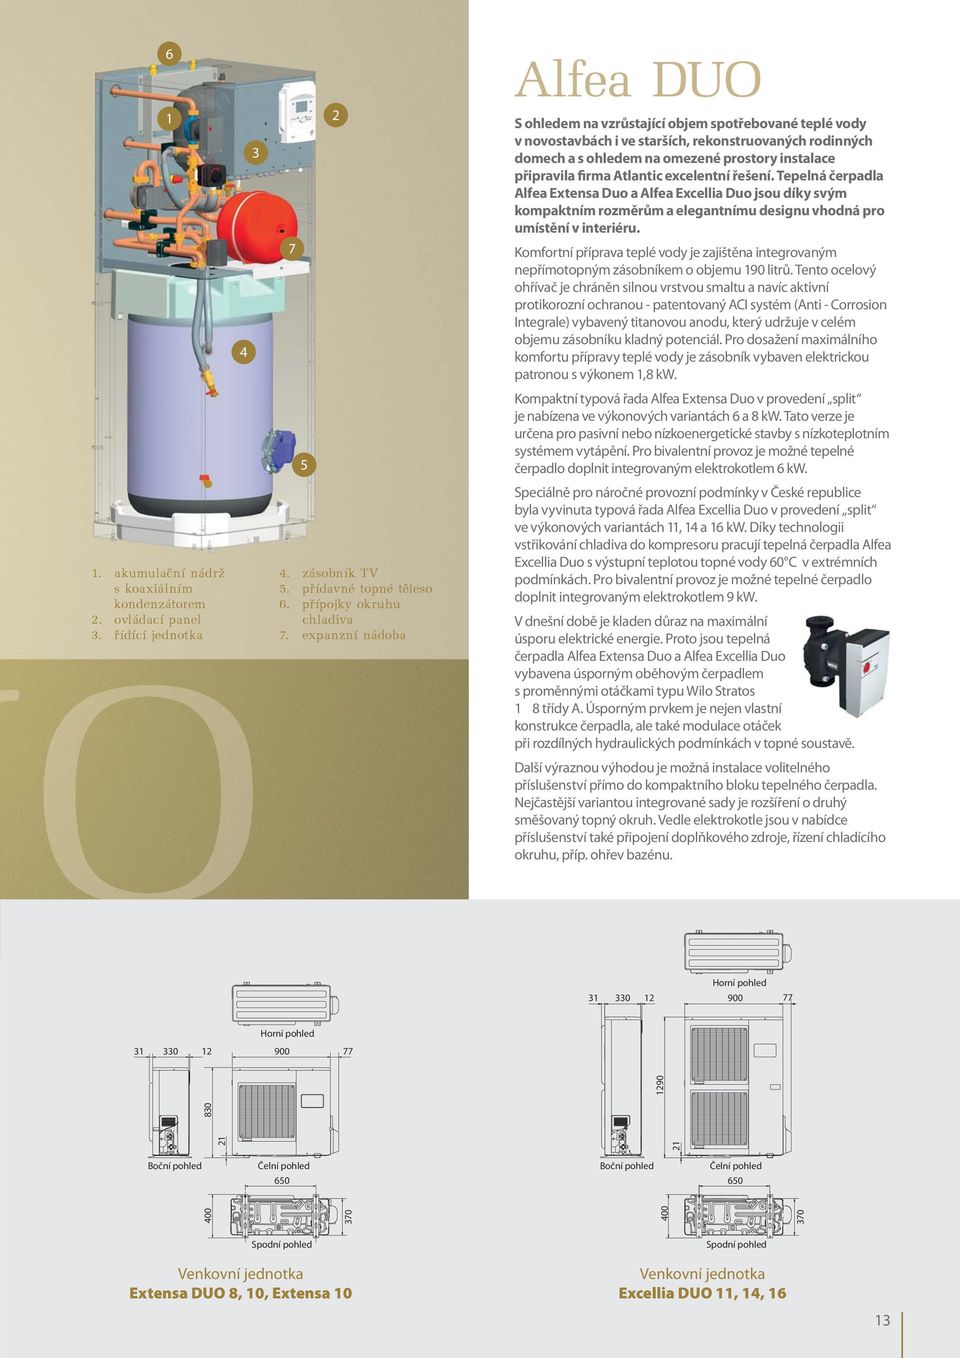 4 7 Komfortní příprava teplé vody je zajištěna integrovaným nepřímotopným zásobníkem o objemu 190 litrů.